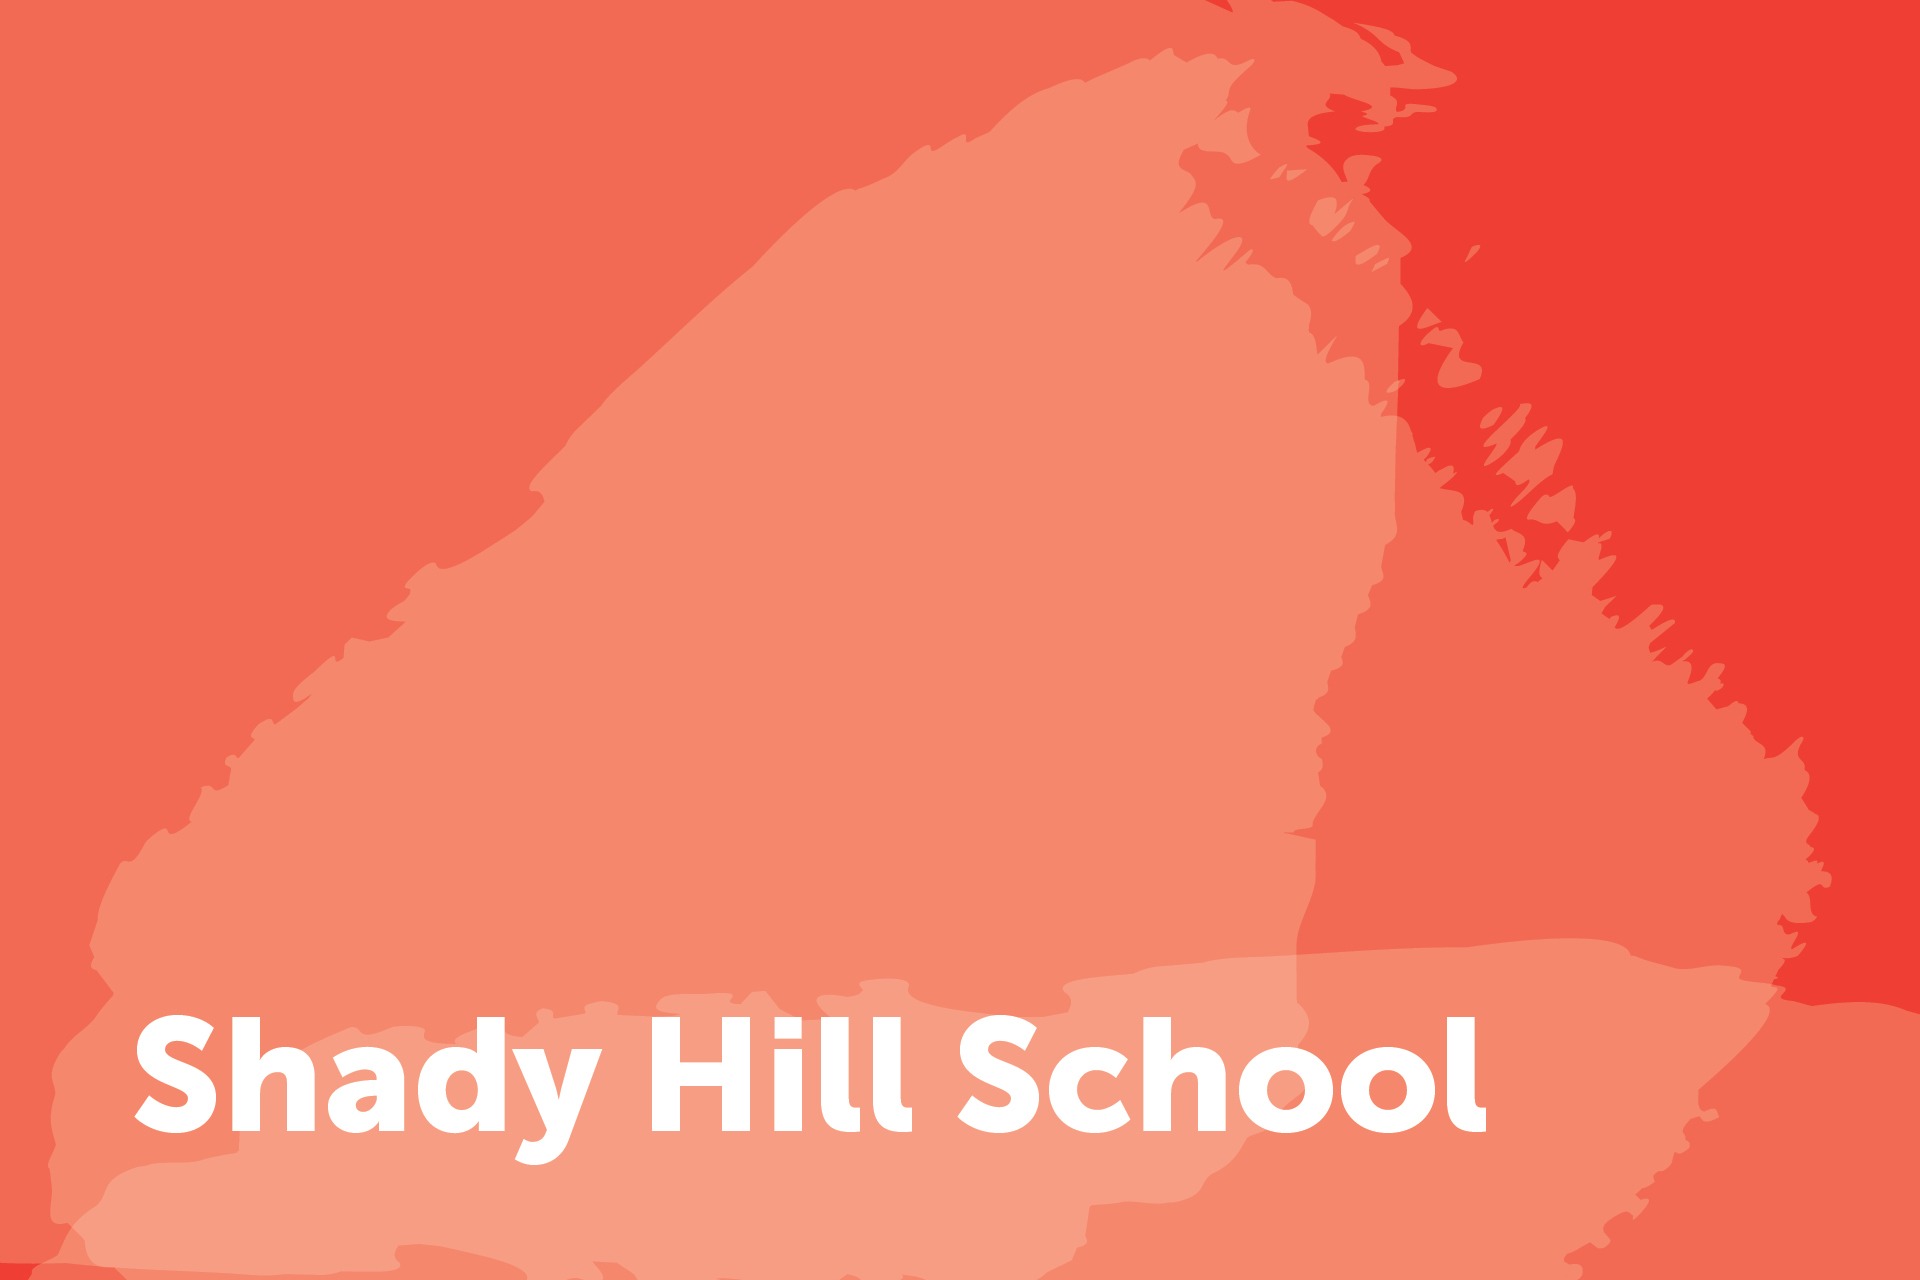 Shady Hill School City Year